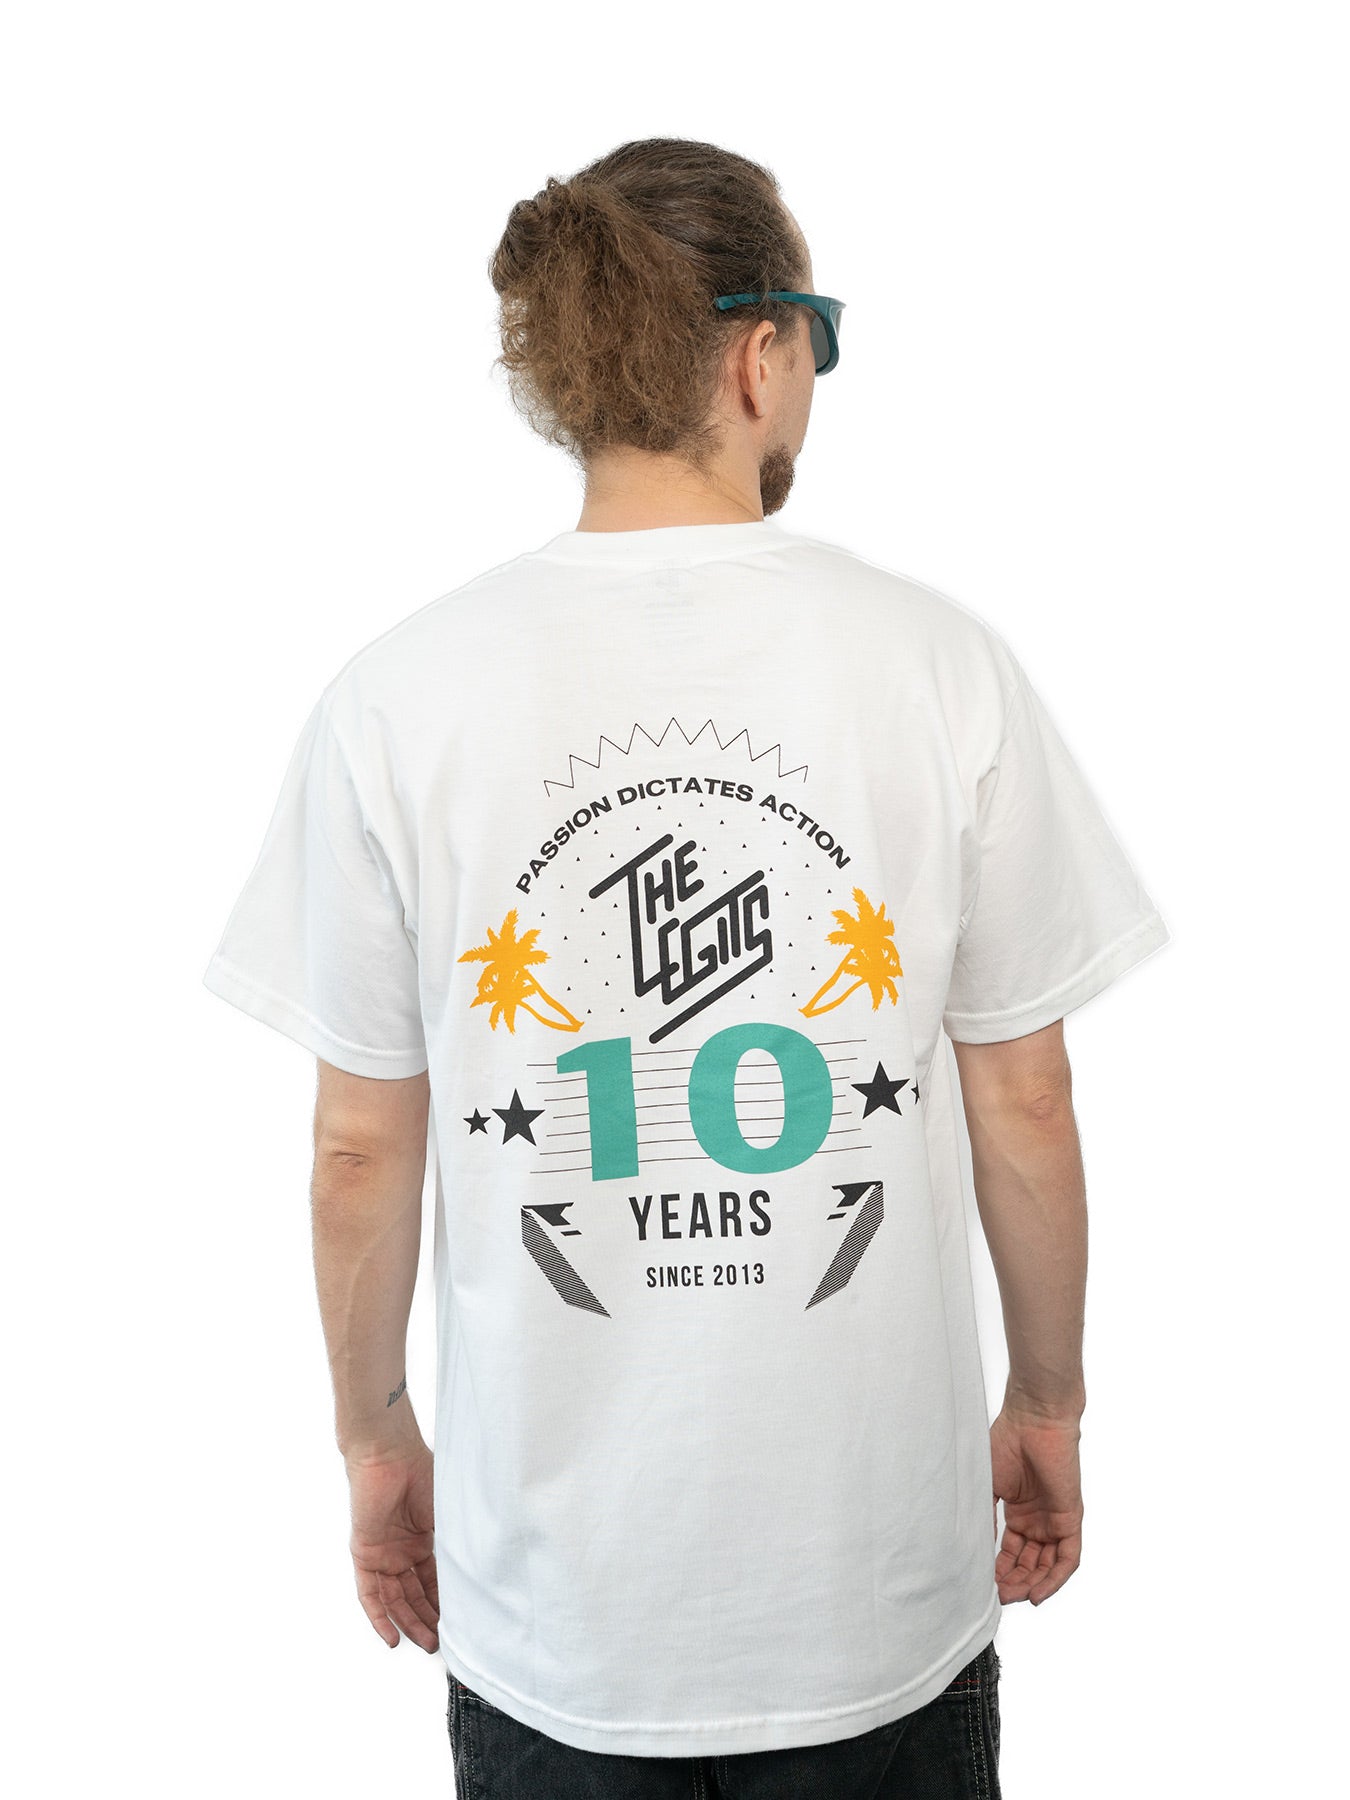 Tee - The Legits 10-YEAR Anniversary (White)